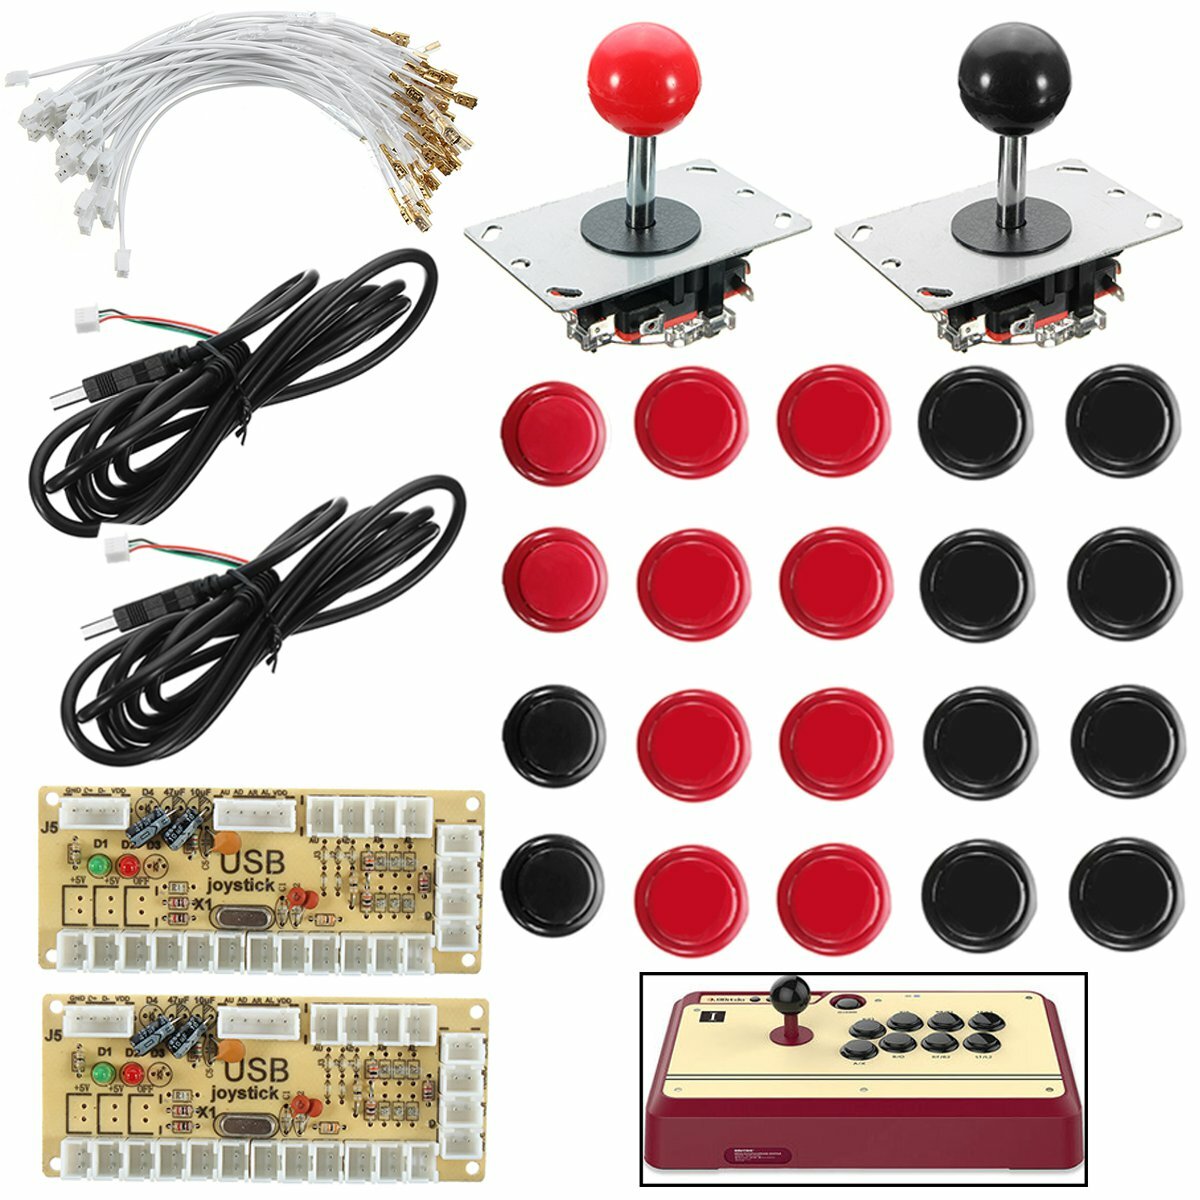 

Joystick Push Button Zero Delay Arcade Game DIY Kit For MAME